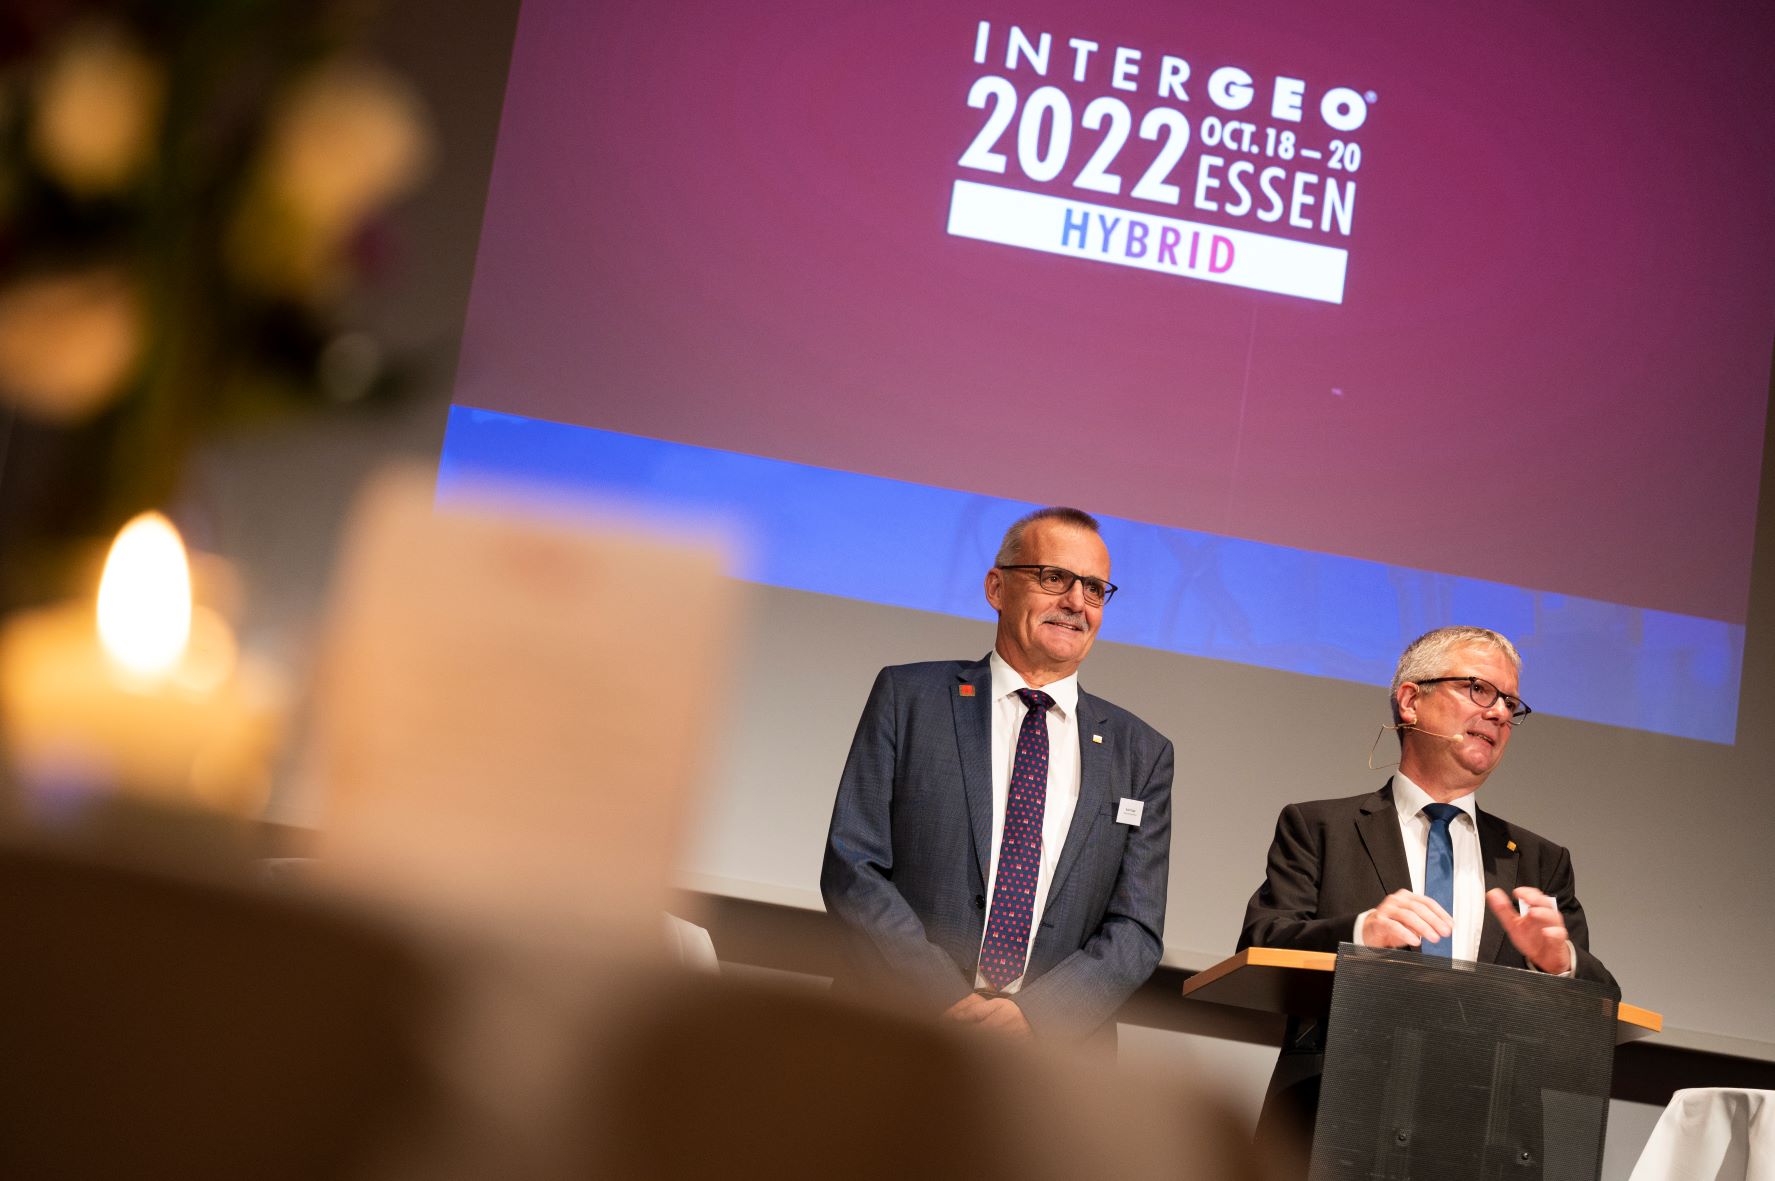 DVW-Präsident Hansjörg Kutterer (rechts) stellt Rudolf Staiger als seinen designierten Nachfolger vor. (Bild: © HINTE Messe- und Ausstellungs GmbH/ INTERGEO 2022/Fotograf: Nico Herzog)